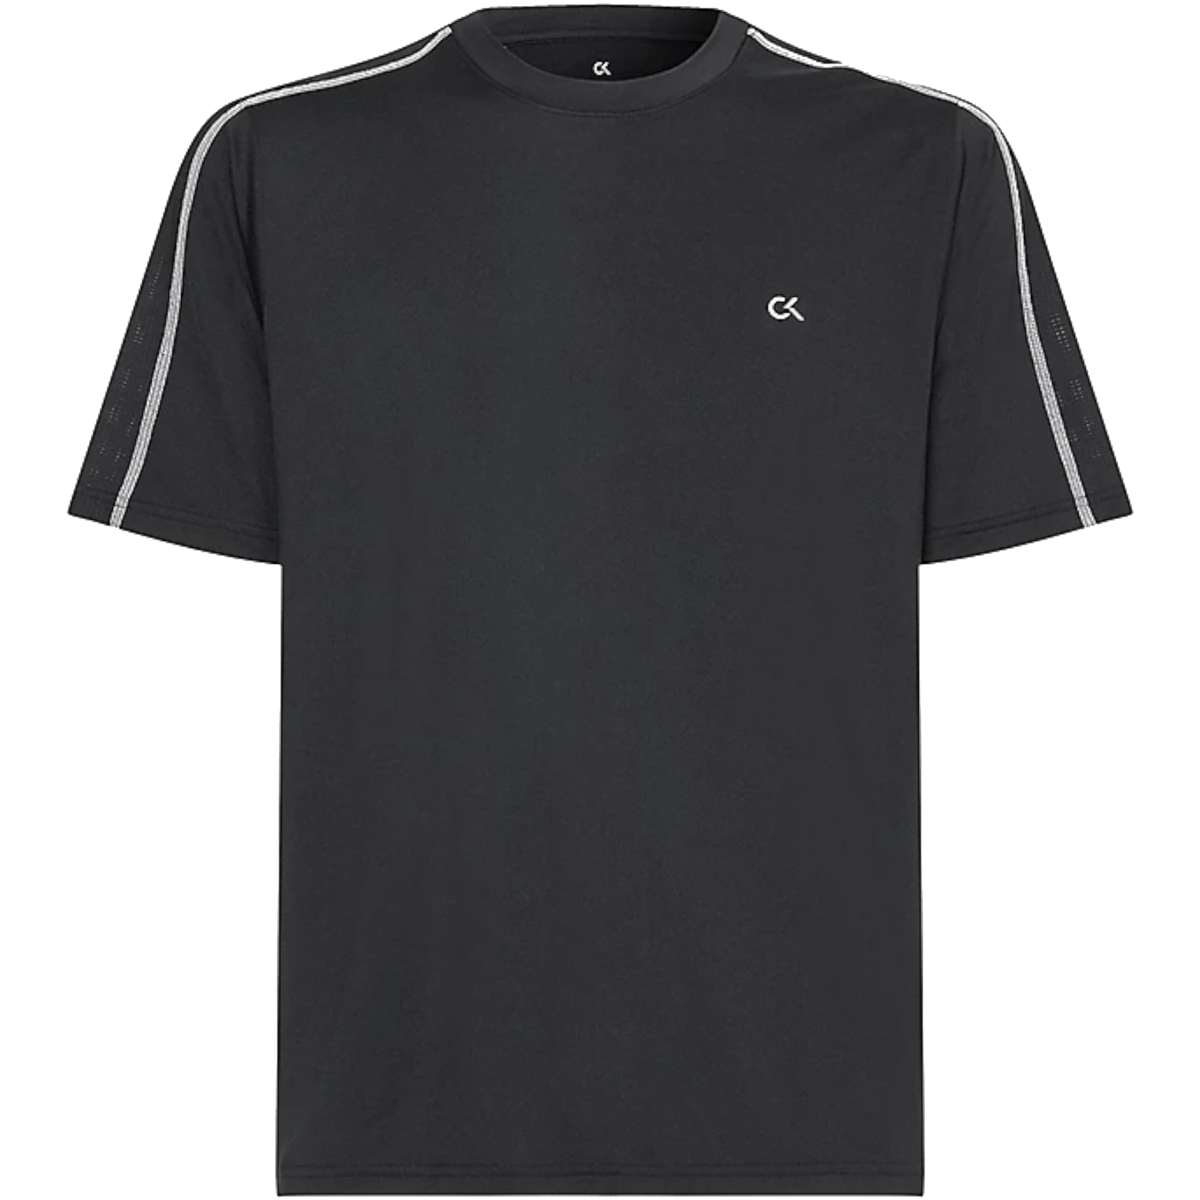 Vêtements Homme T-shirts manches courtes Calvin Klein Jeans 00GMF1K101 Noir